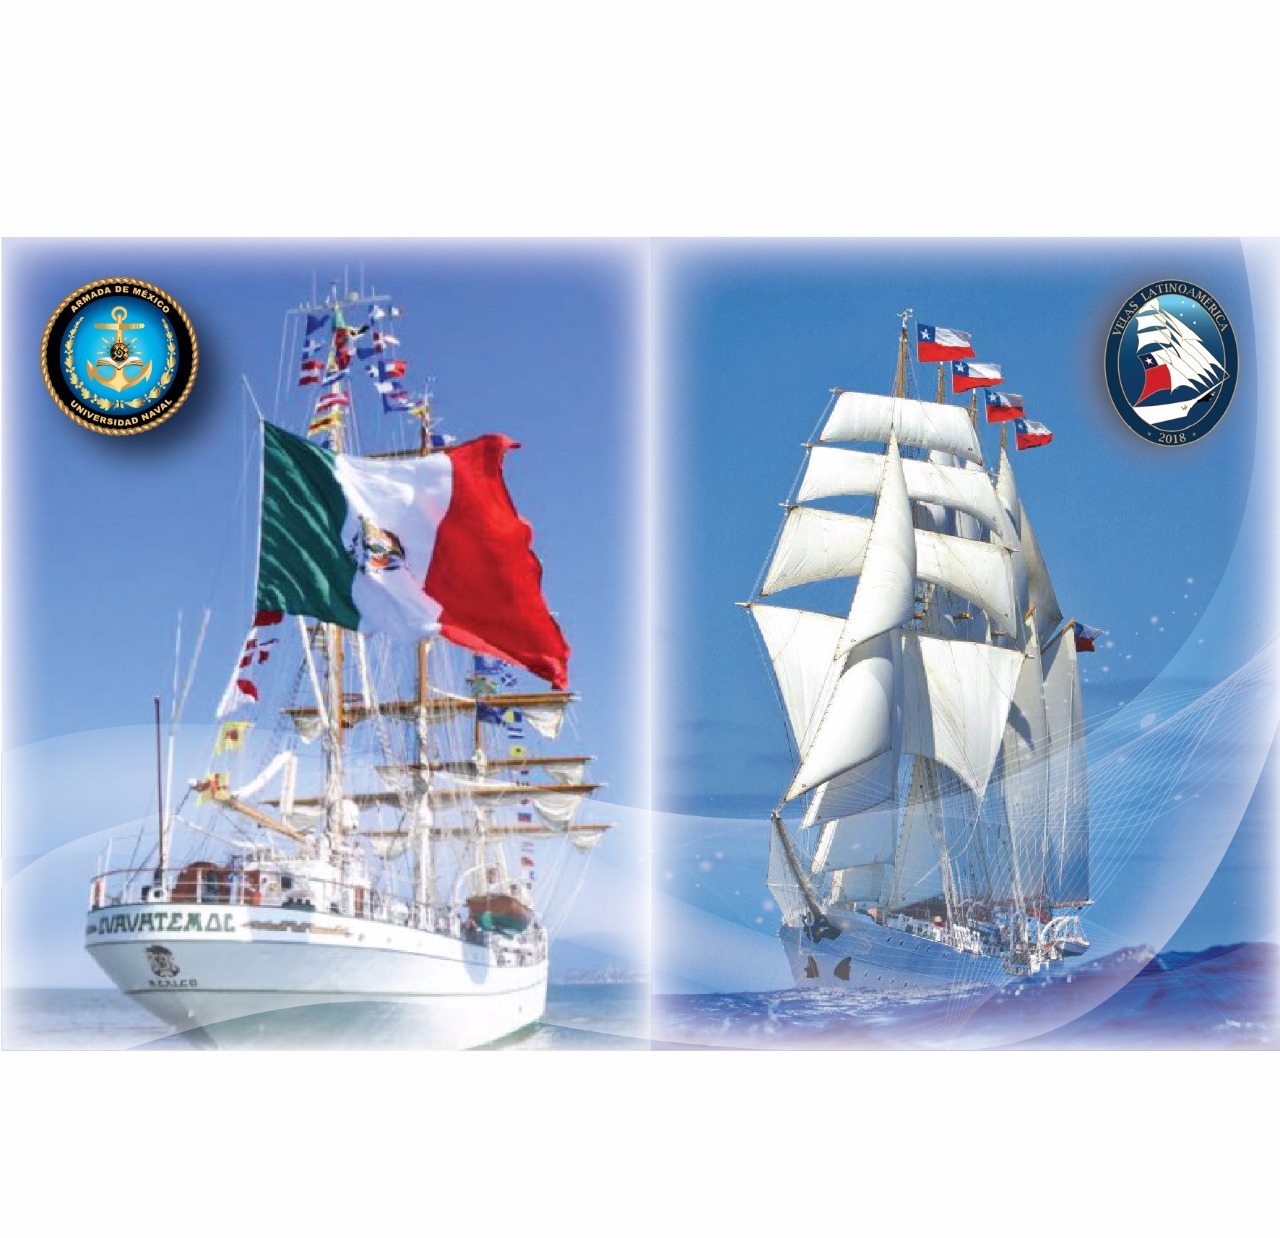 Buques Veleros del Crucero de Instrucción 2018 “Velas Latinoamérica” continúan su travesía.